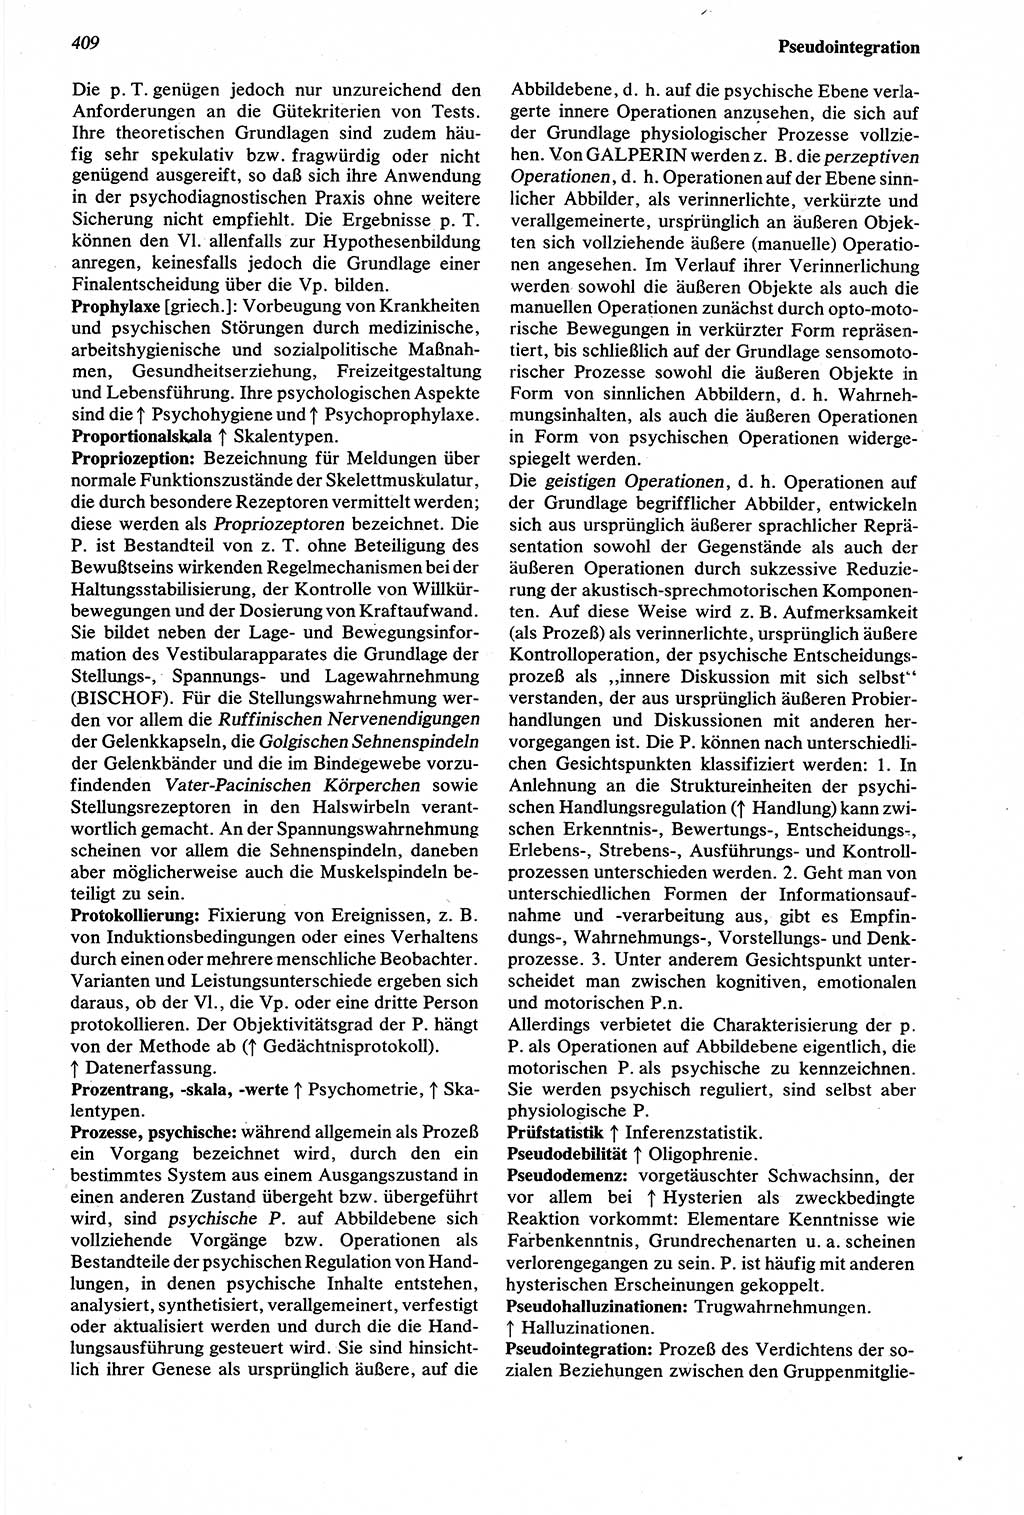 Wörterbuch der Psychologie [Deutsche Demokratische Republik (DDR)] 1976, Seite 409 (Wb. Psych. DDR 1976, S. 409)